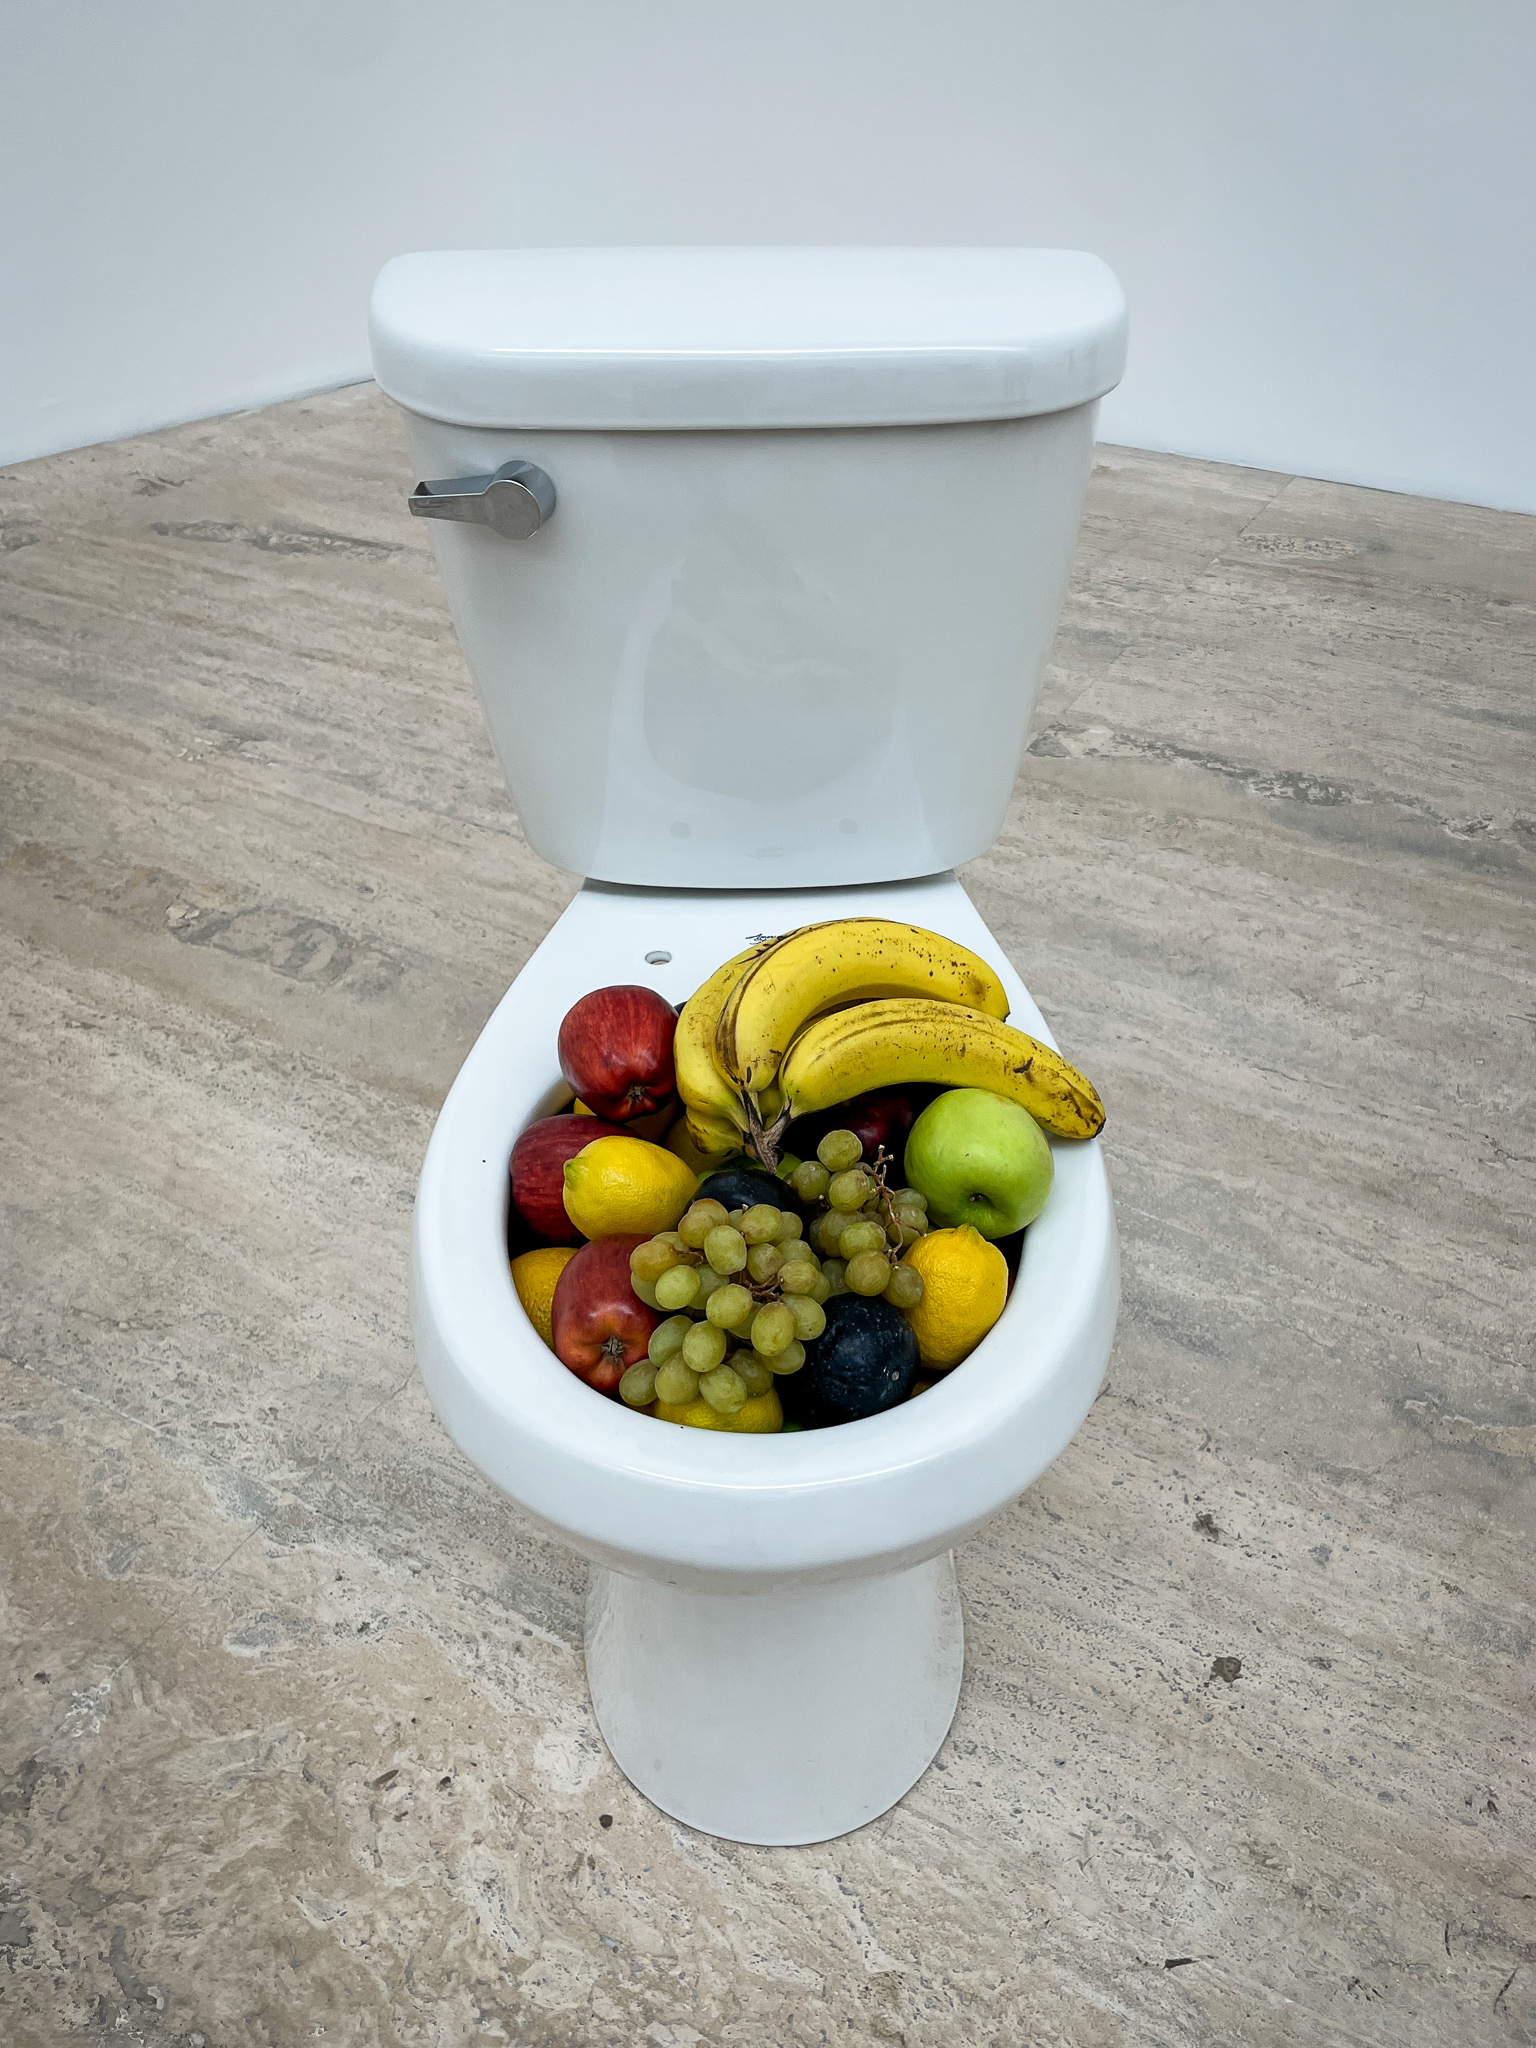 museo jumex museum Urs Fischer exhibit fruit in toilet bowl